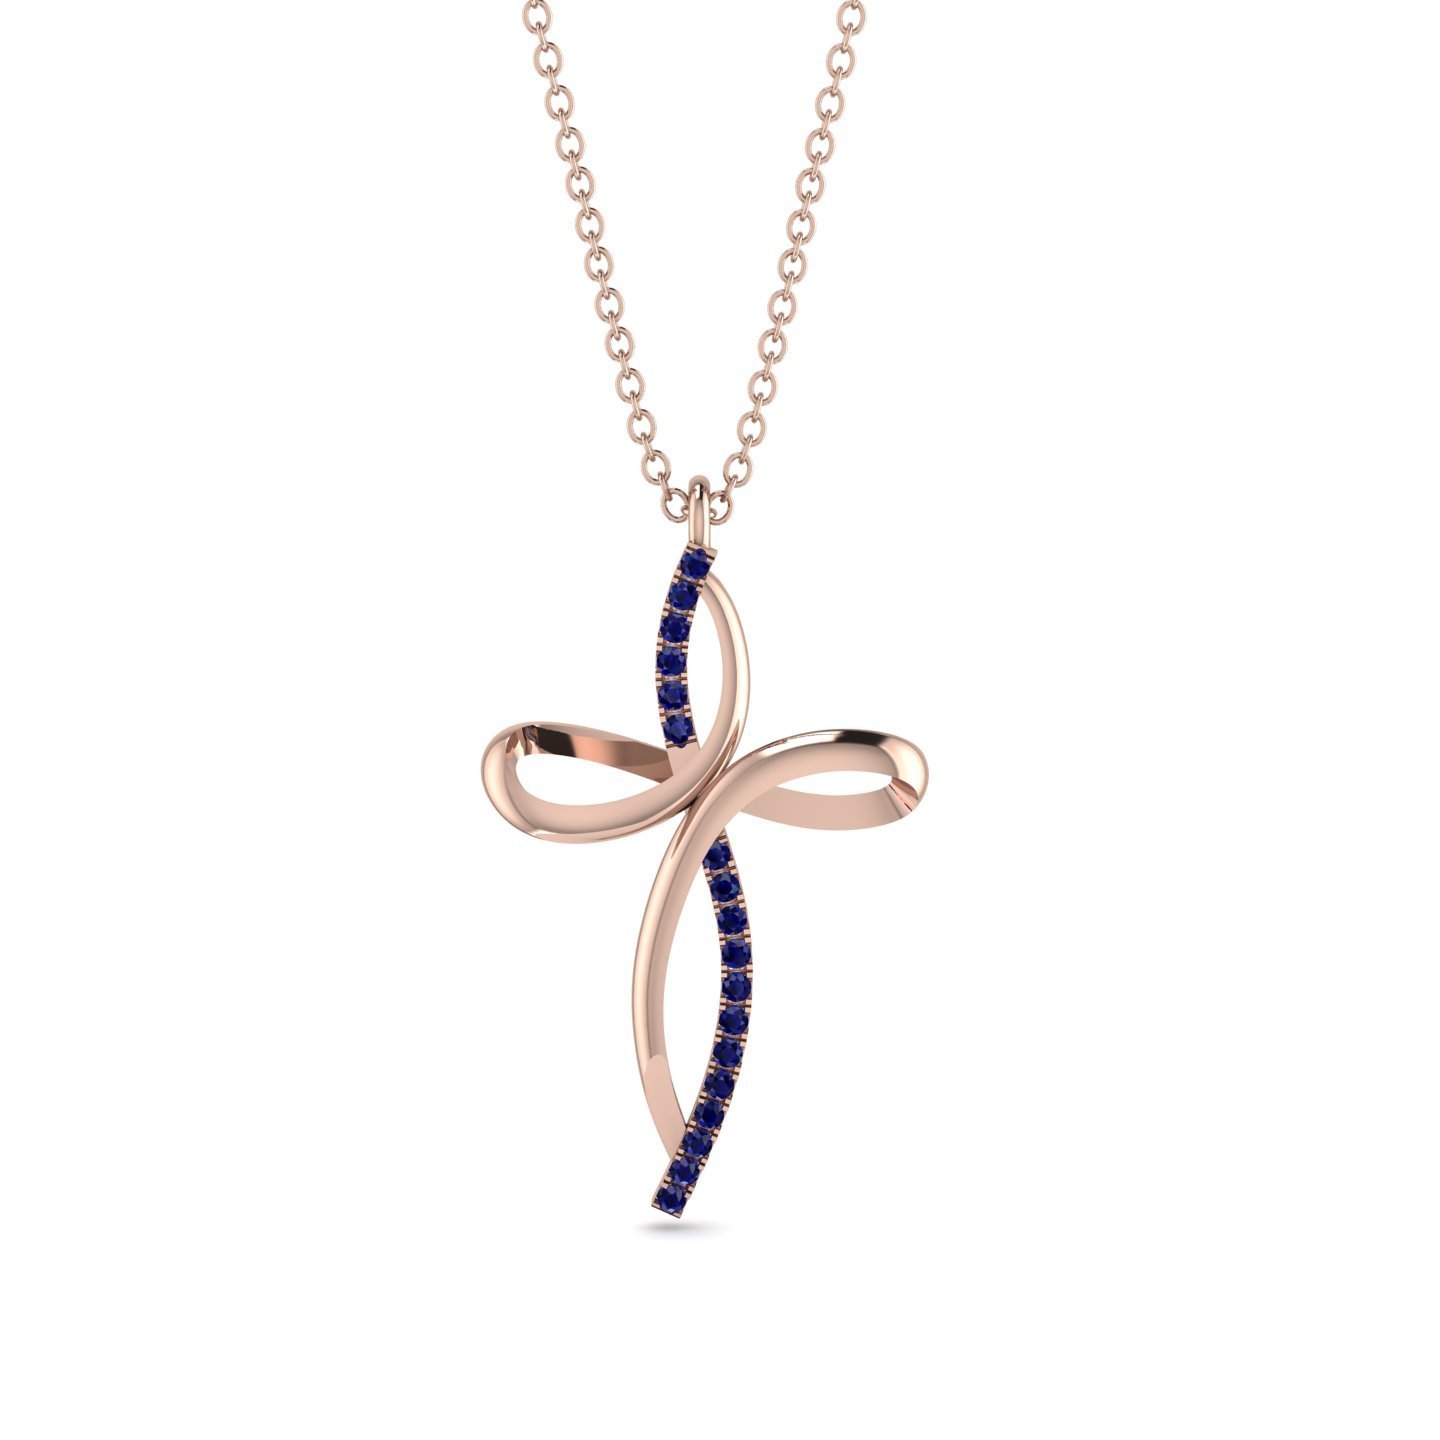 Unique Sapphire Swirling Cross Necklace - Arthur No. 14